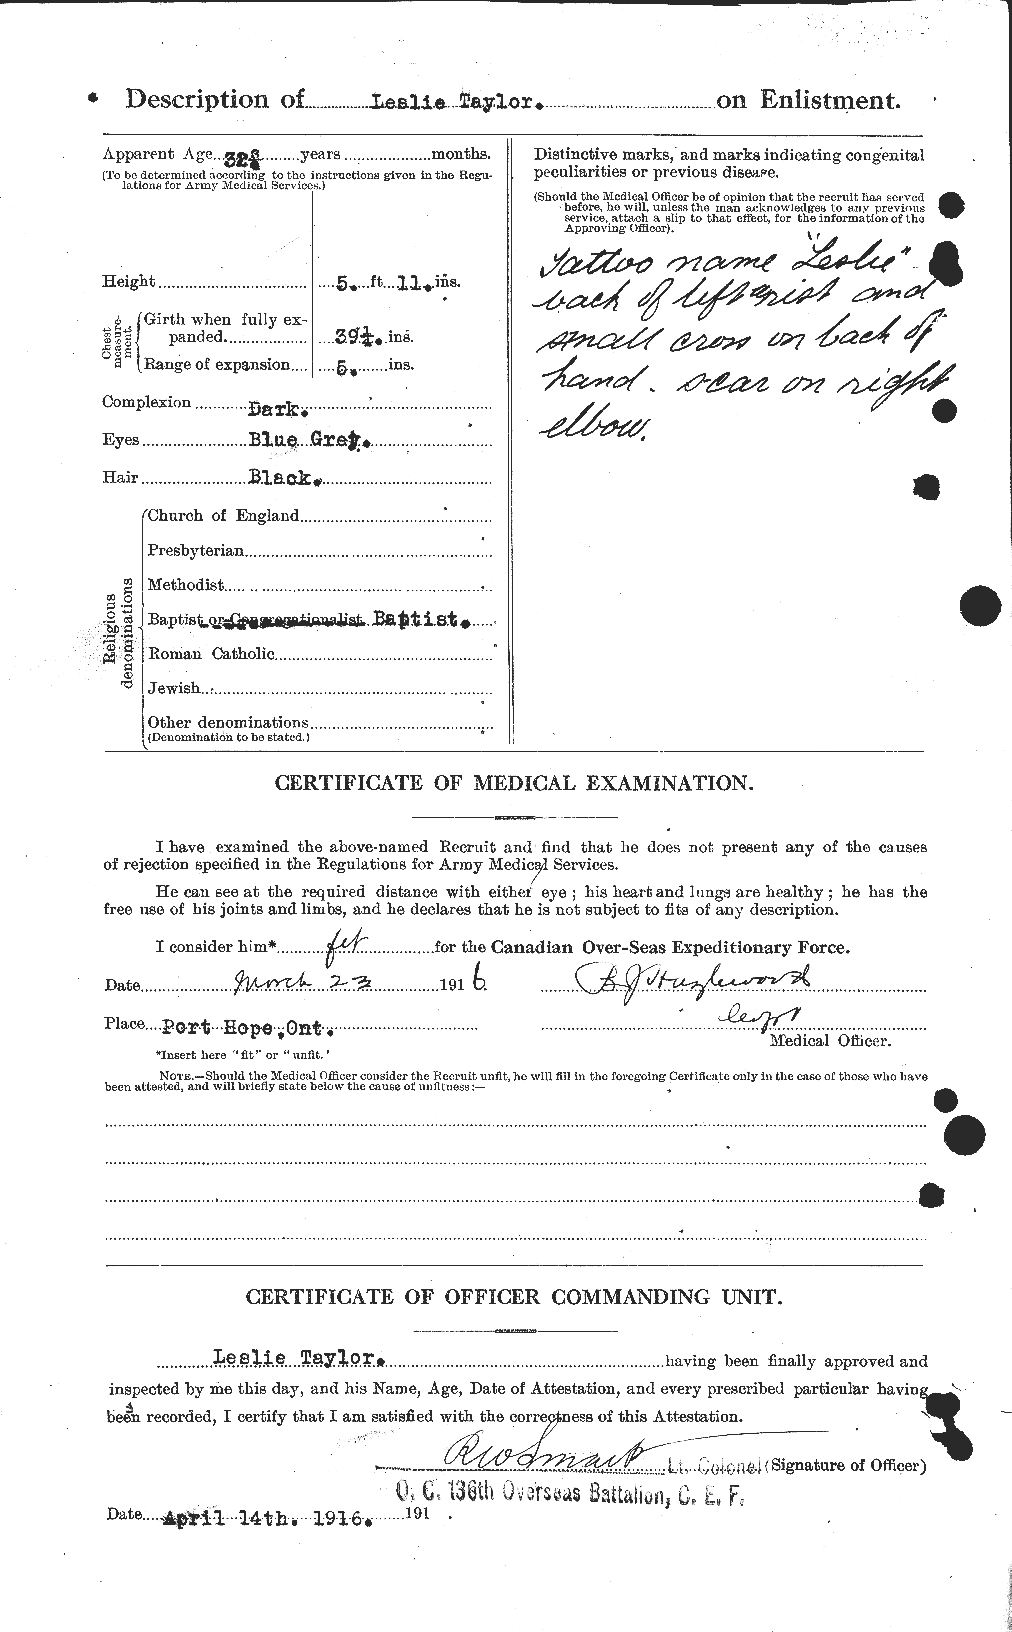 Dossiers du Personnel de la Première Guerre mondiale - CEC 627637b